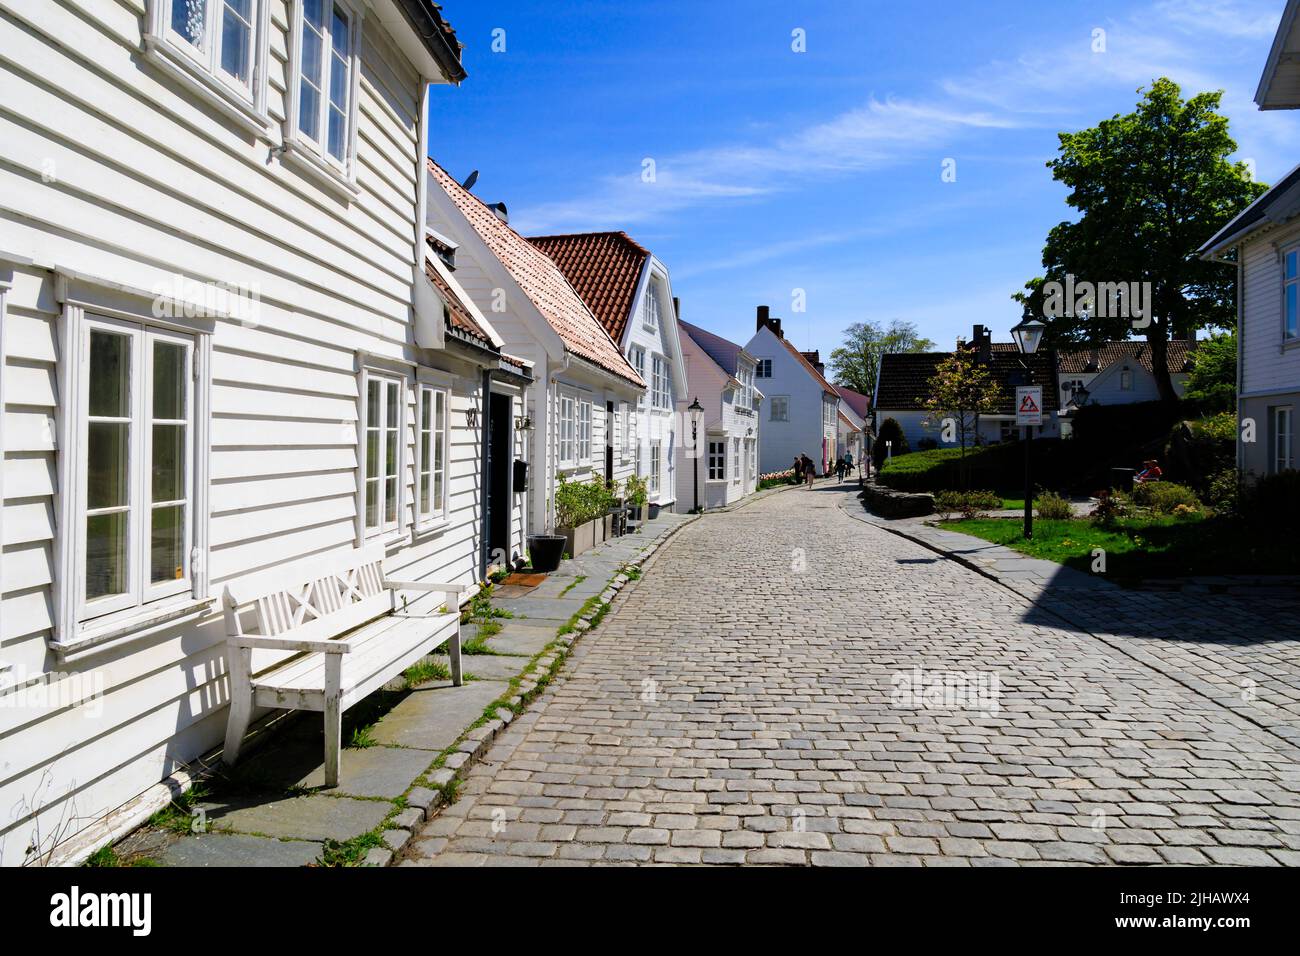 Casas tradicionales noruegas pintadas en madera blanca en Øvre Strandgate, Stavanger, Noruega. Foto de stock